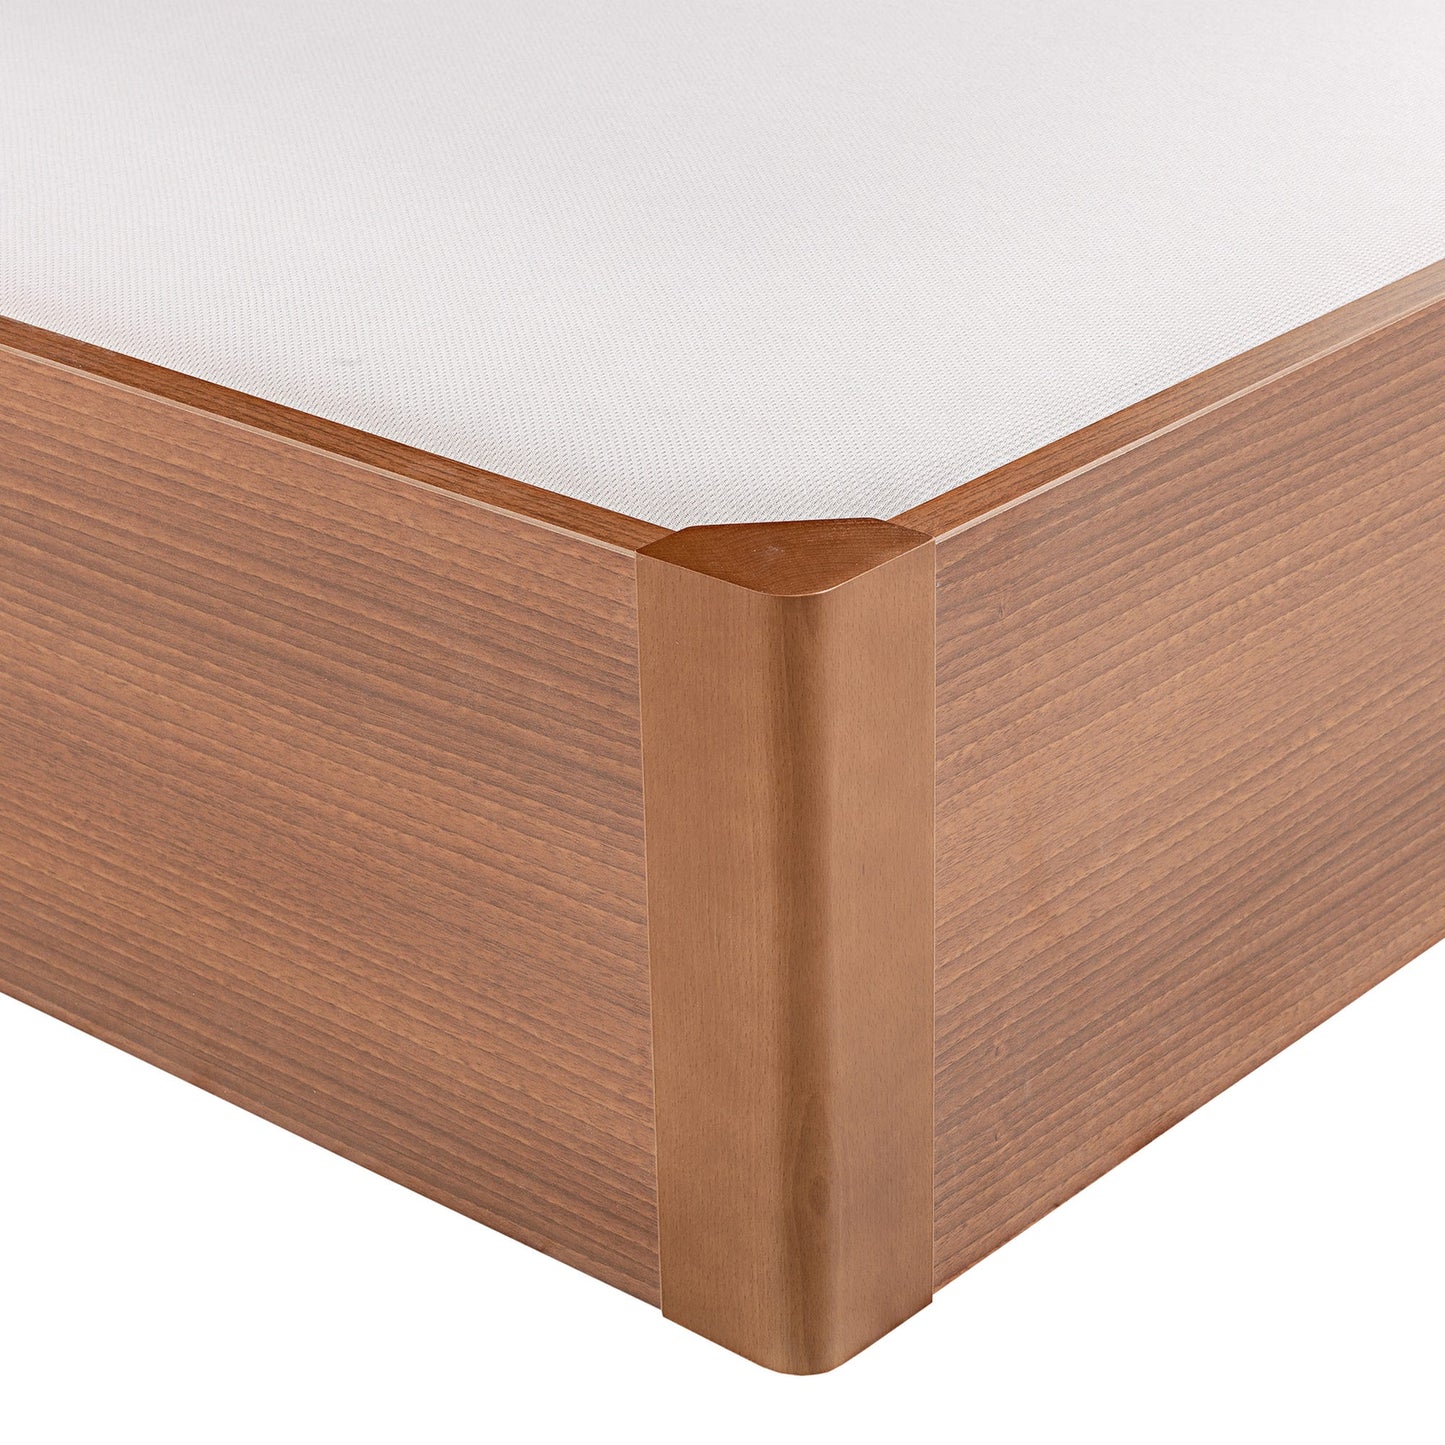 Canapé abatible de madera tapa única de color cerezo - DESIGN - 150x182